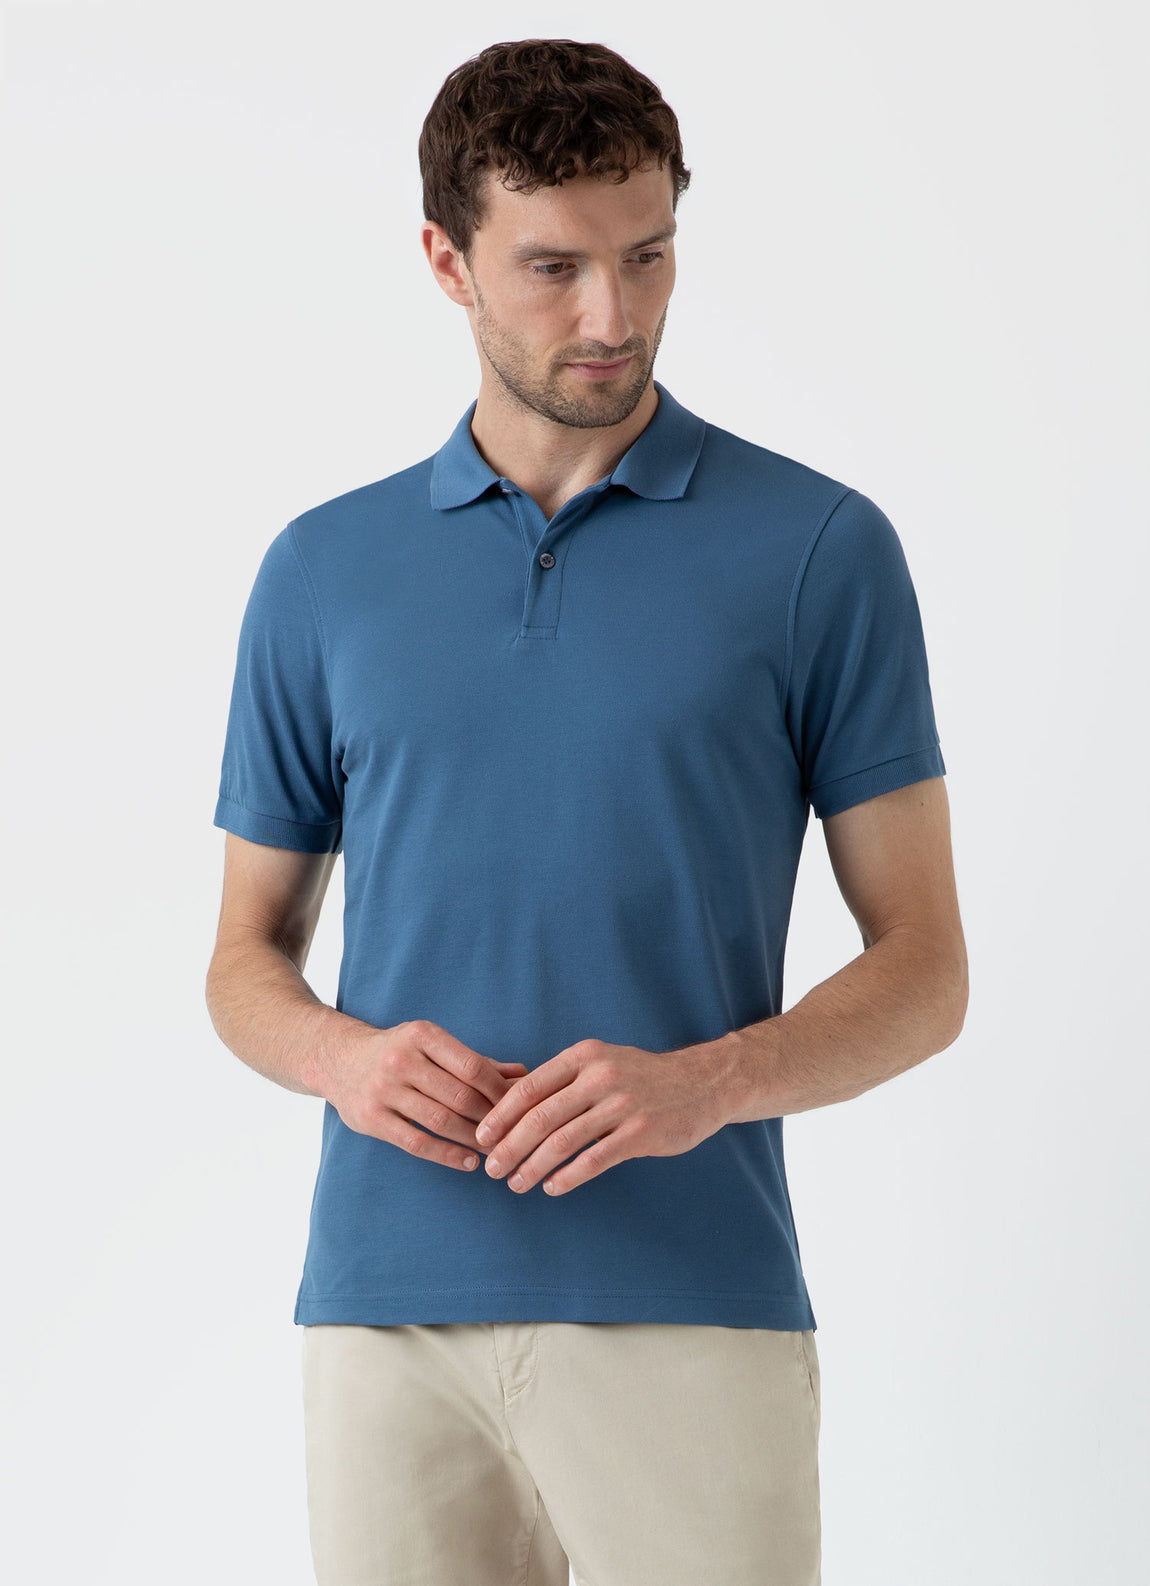 Men's Piqué Polo Shirt in Steel Blue | Sunspel